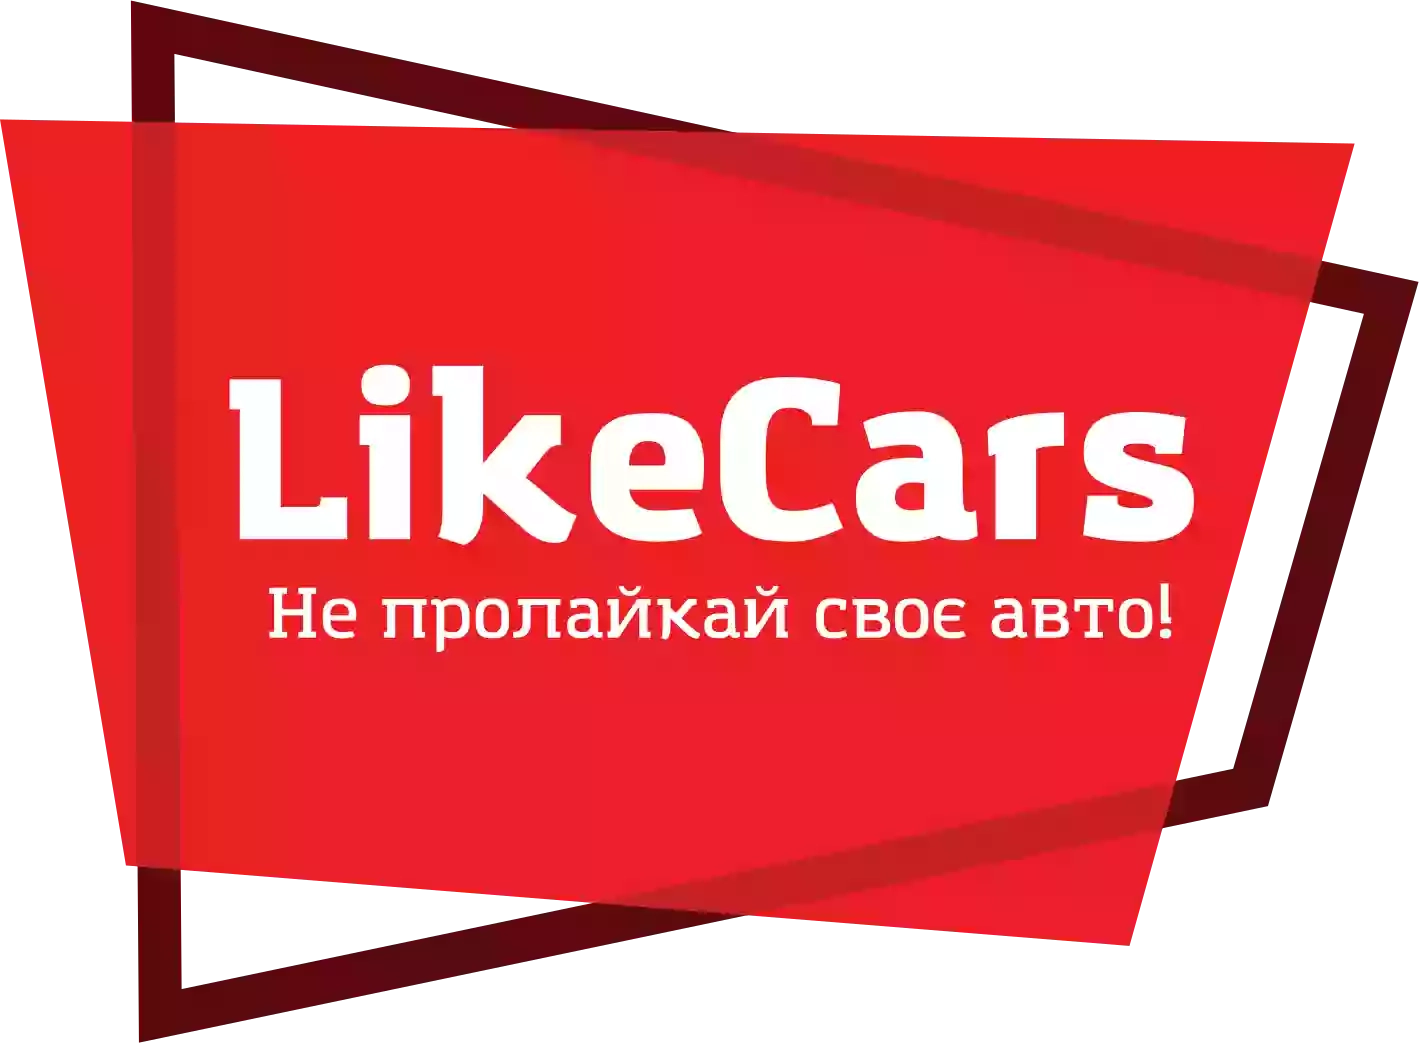 Купить машину в США, ЕС и Корее, заказать бу автомобиль в Киеве, авто в рассрочку, кредит и лизинг ▶️ Likecars